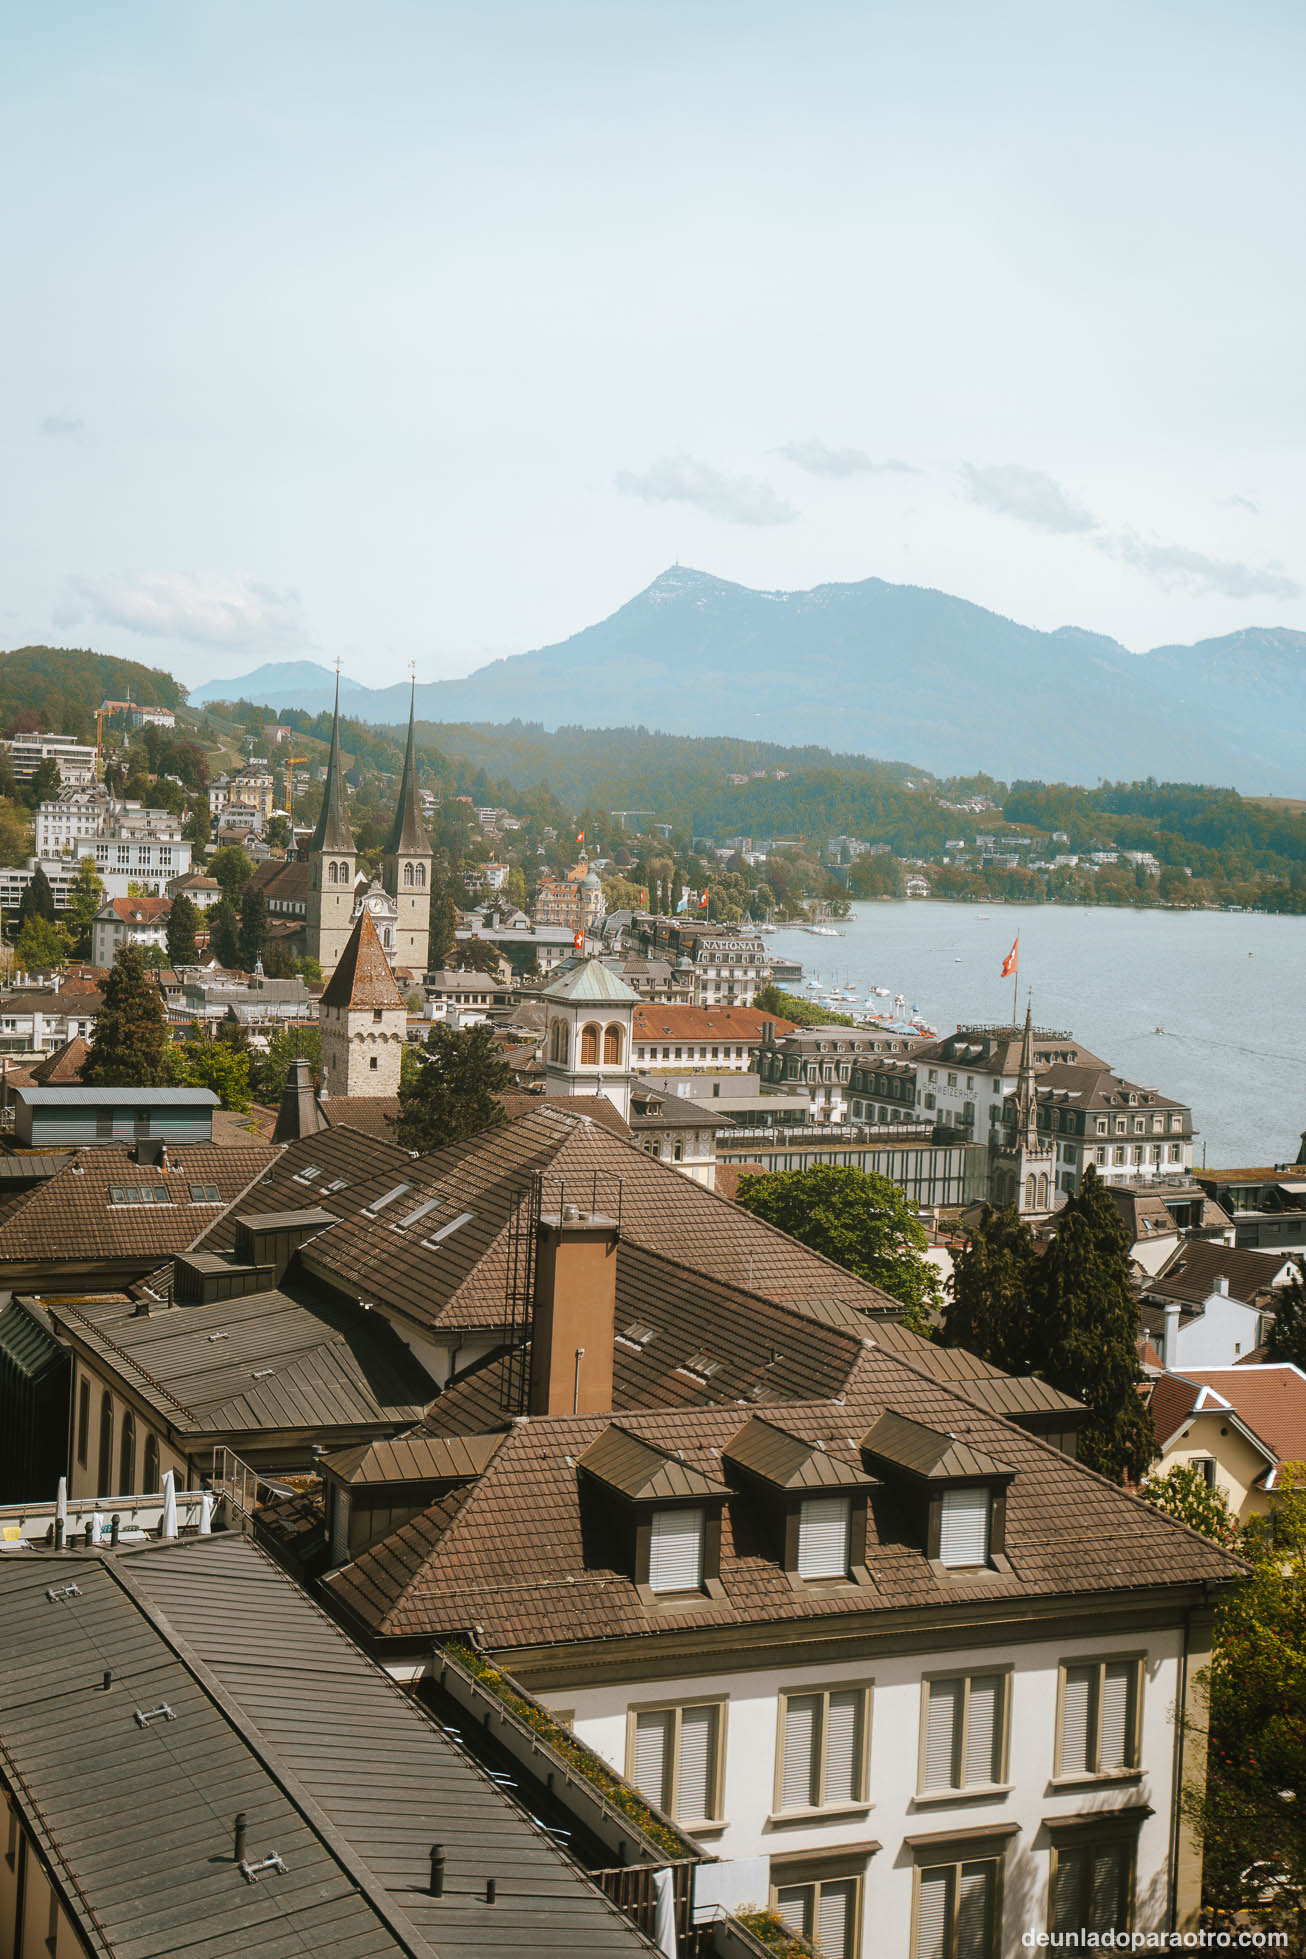 Excursión al monte Pilatus, una de las actividades más populares en Lucerna